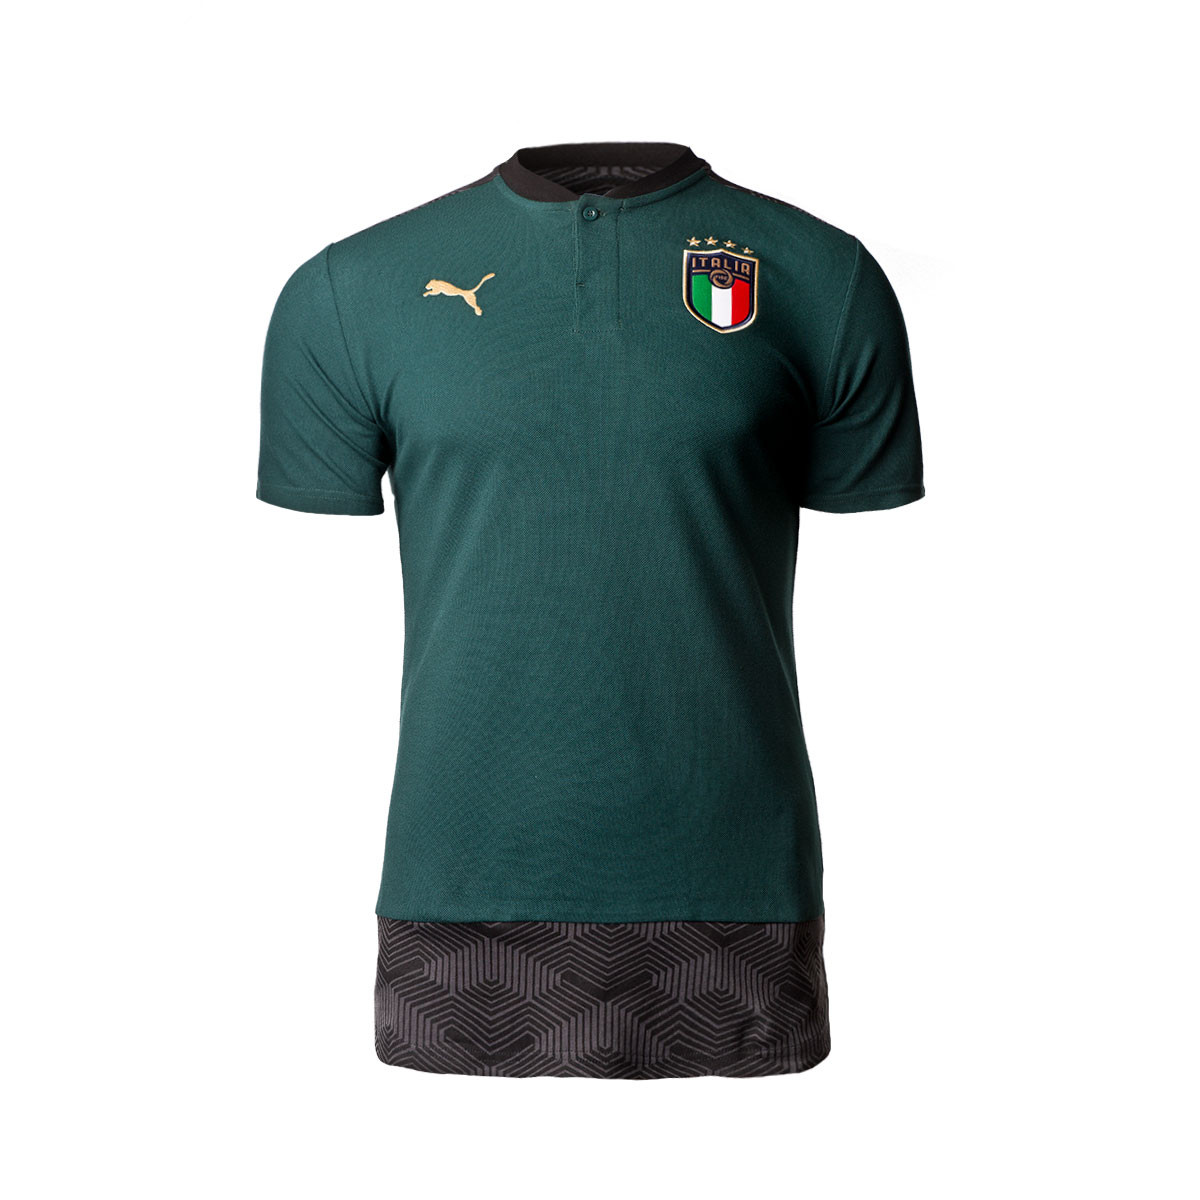 Polo shirt Puma Italia Casuals 2019 